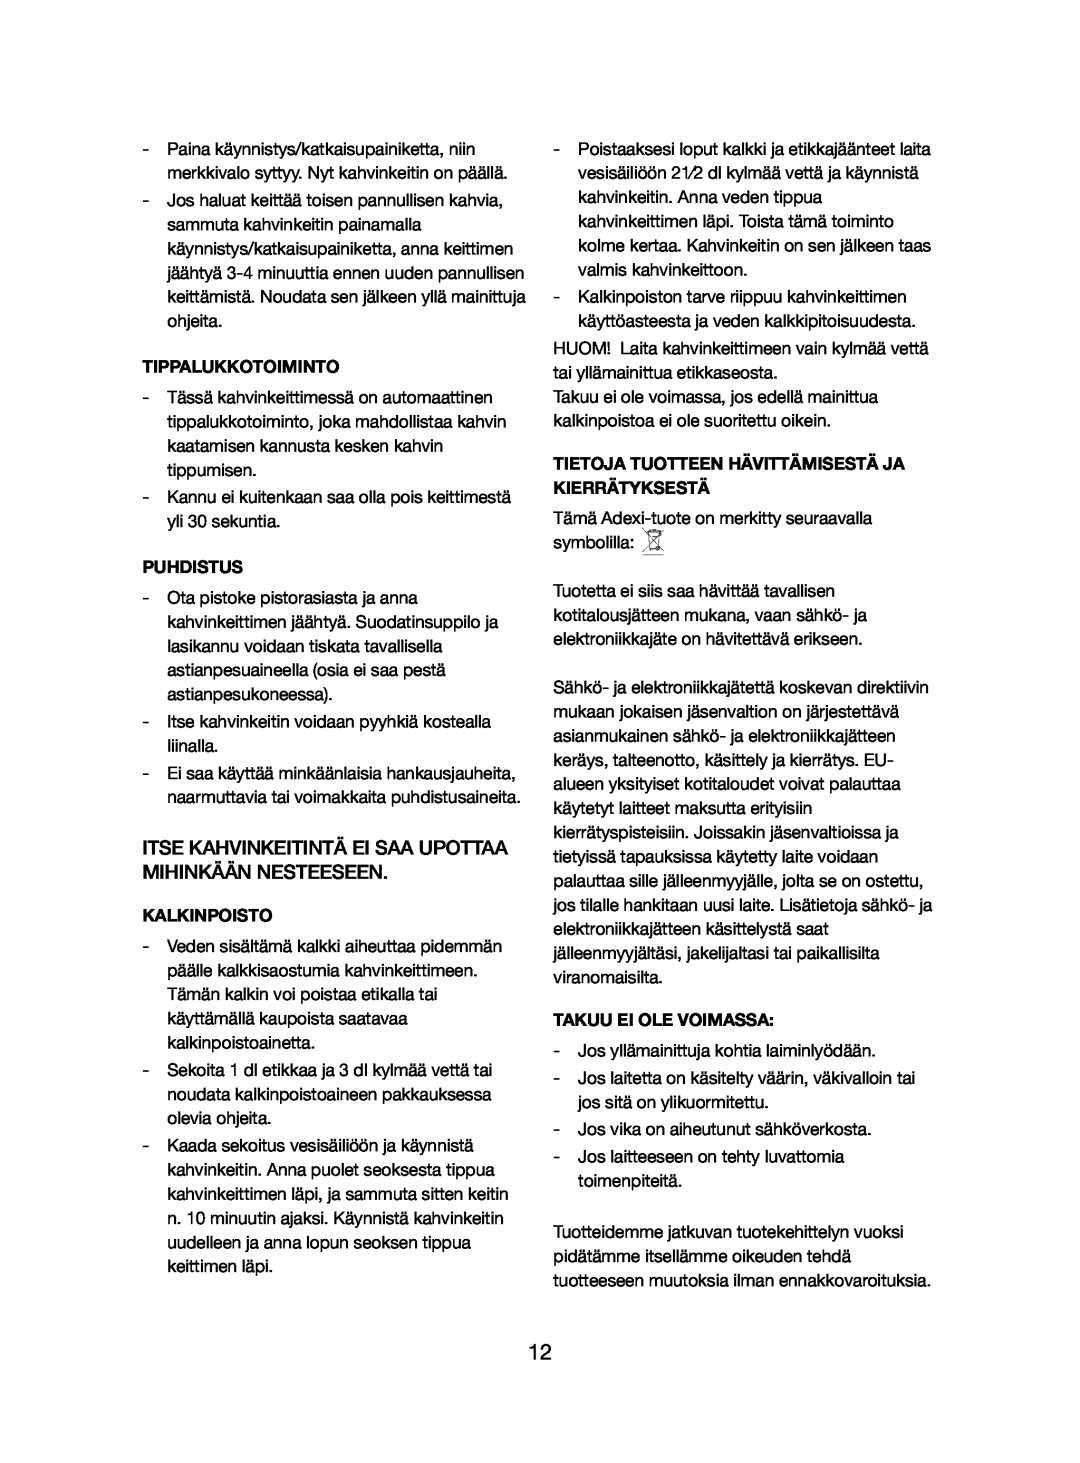 Melissa 245-060 manual Itse Kahvinkeitintä Ei Saa Upottaa Mihinkään Nesteeseen, Tippalukkotoiminto, Puhdistus, Kalkinpoisto 